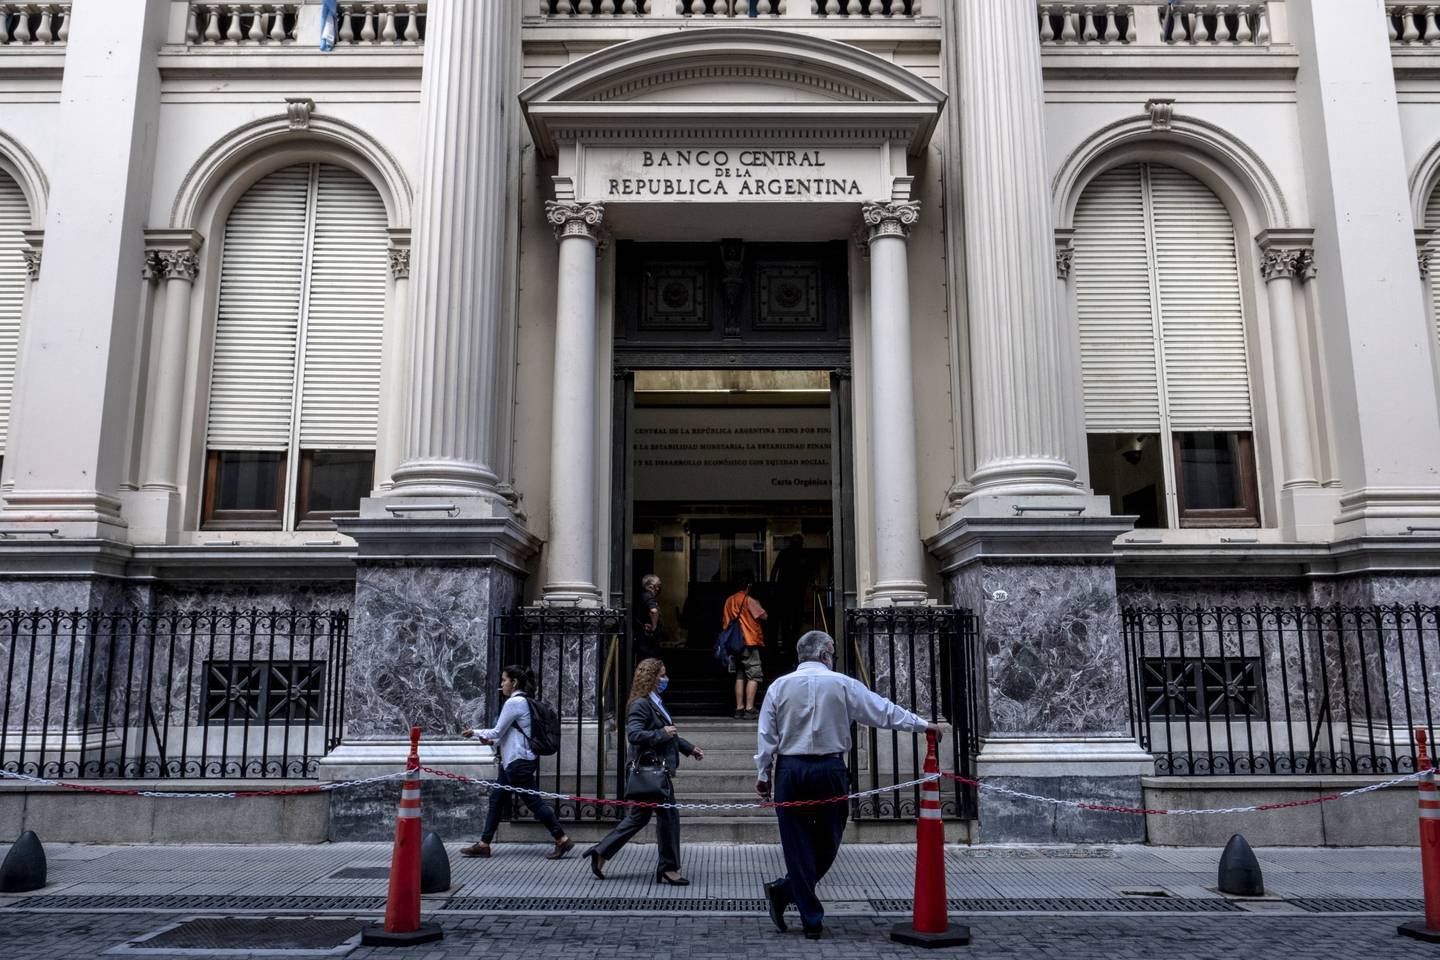 Banco Central de la República Argentinadfd